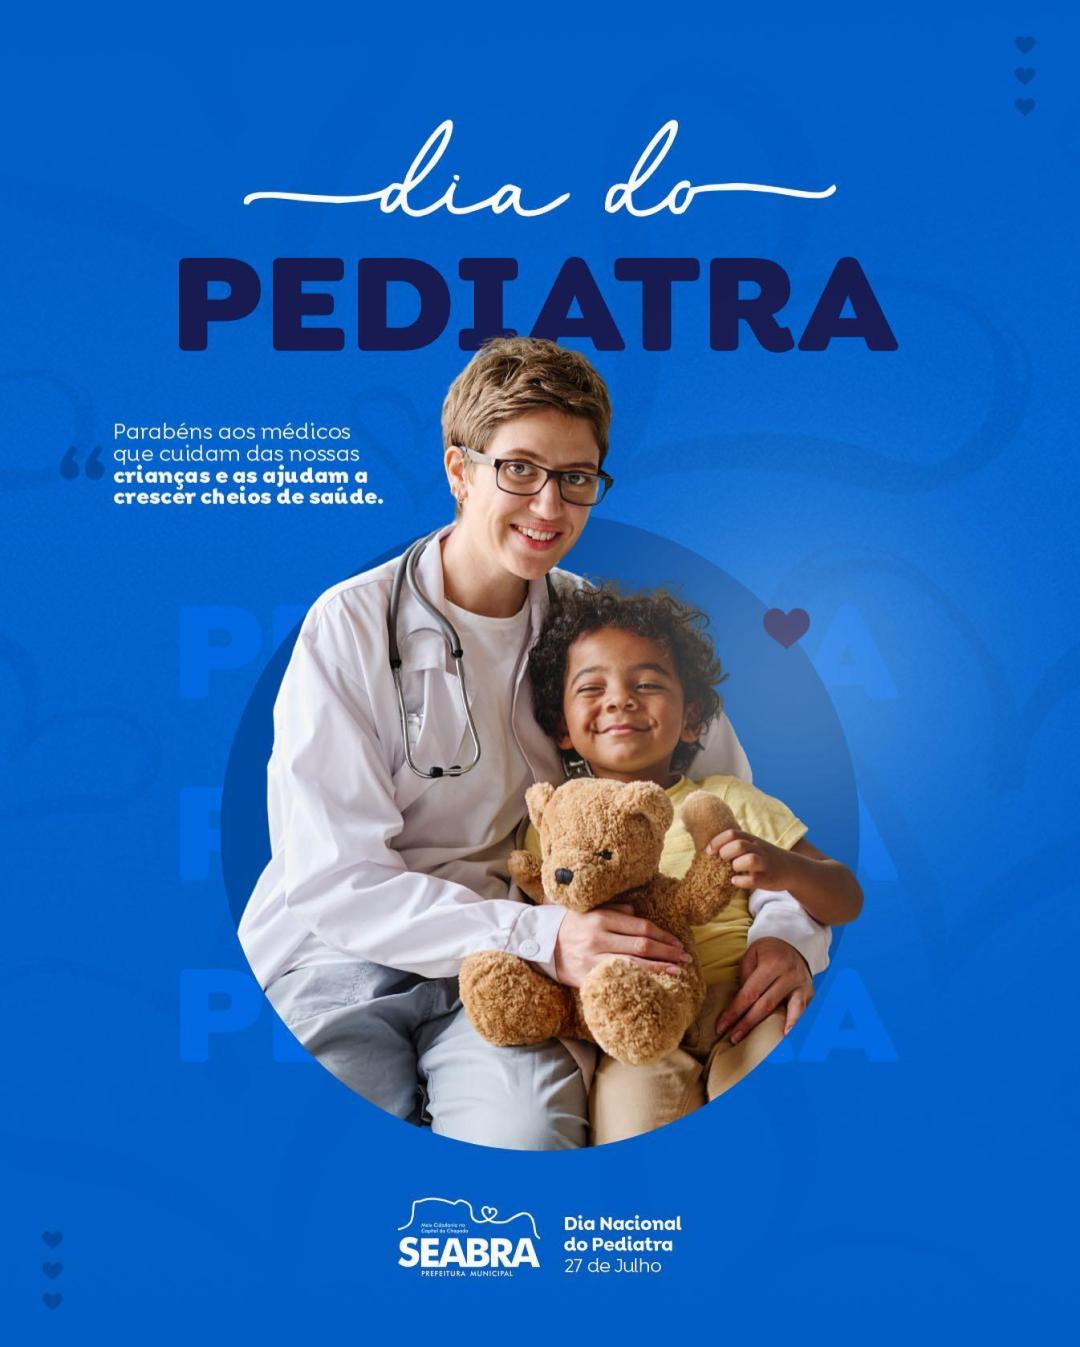 Parabéns aos nossos pediatras ! O Dia do Pediatra é comemorado em 27 de julho